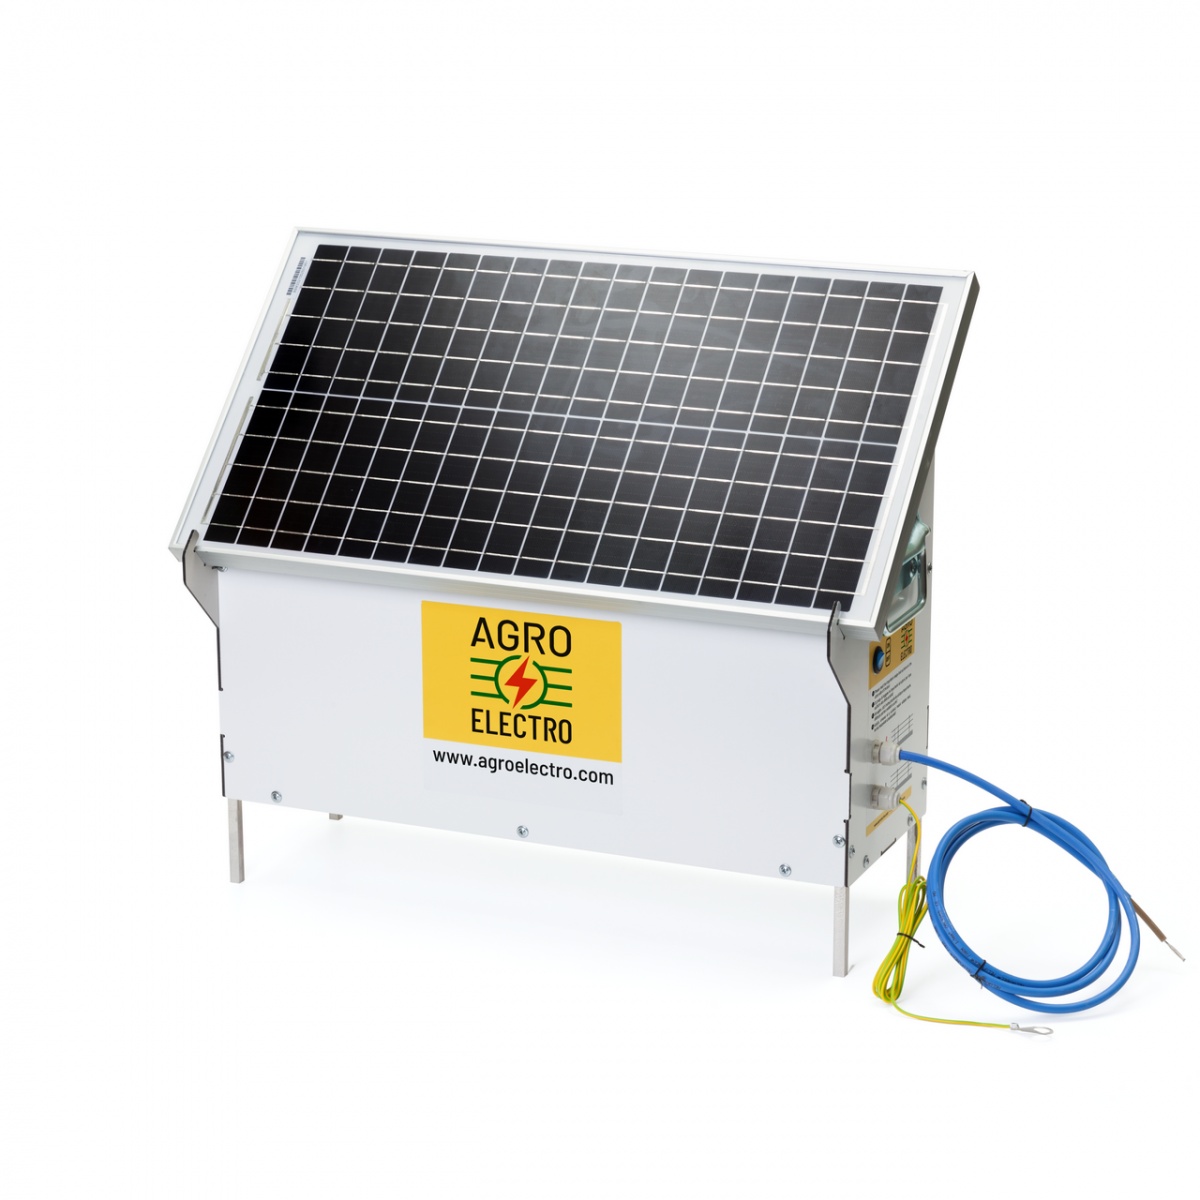 DL 3200 ECO-compact villanypásztor készülék, 30 W-os napelemes rendszerrel